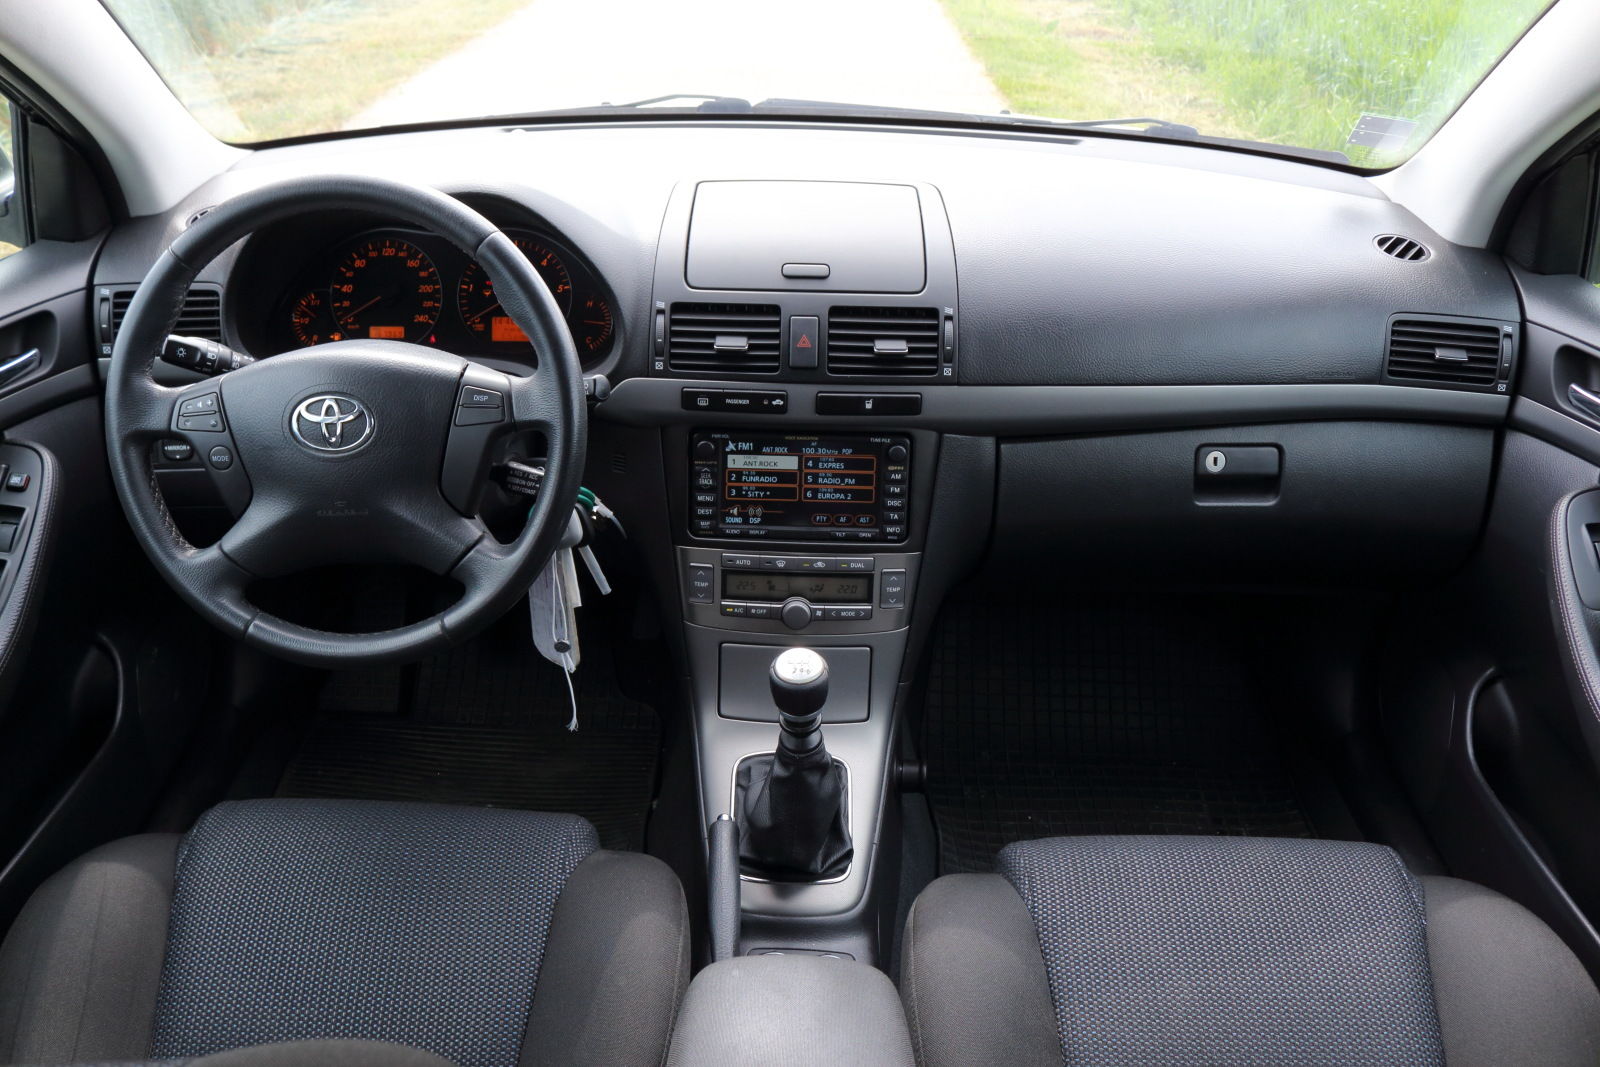 Test jazdenky Toyota Avensis